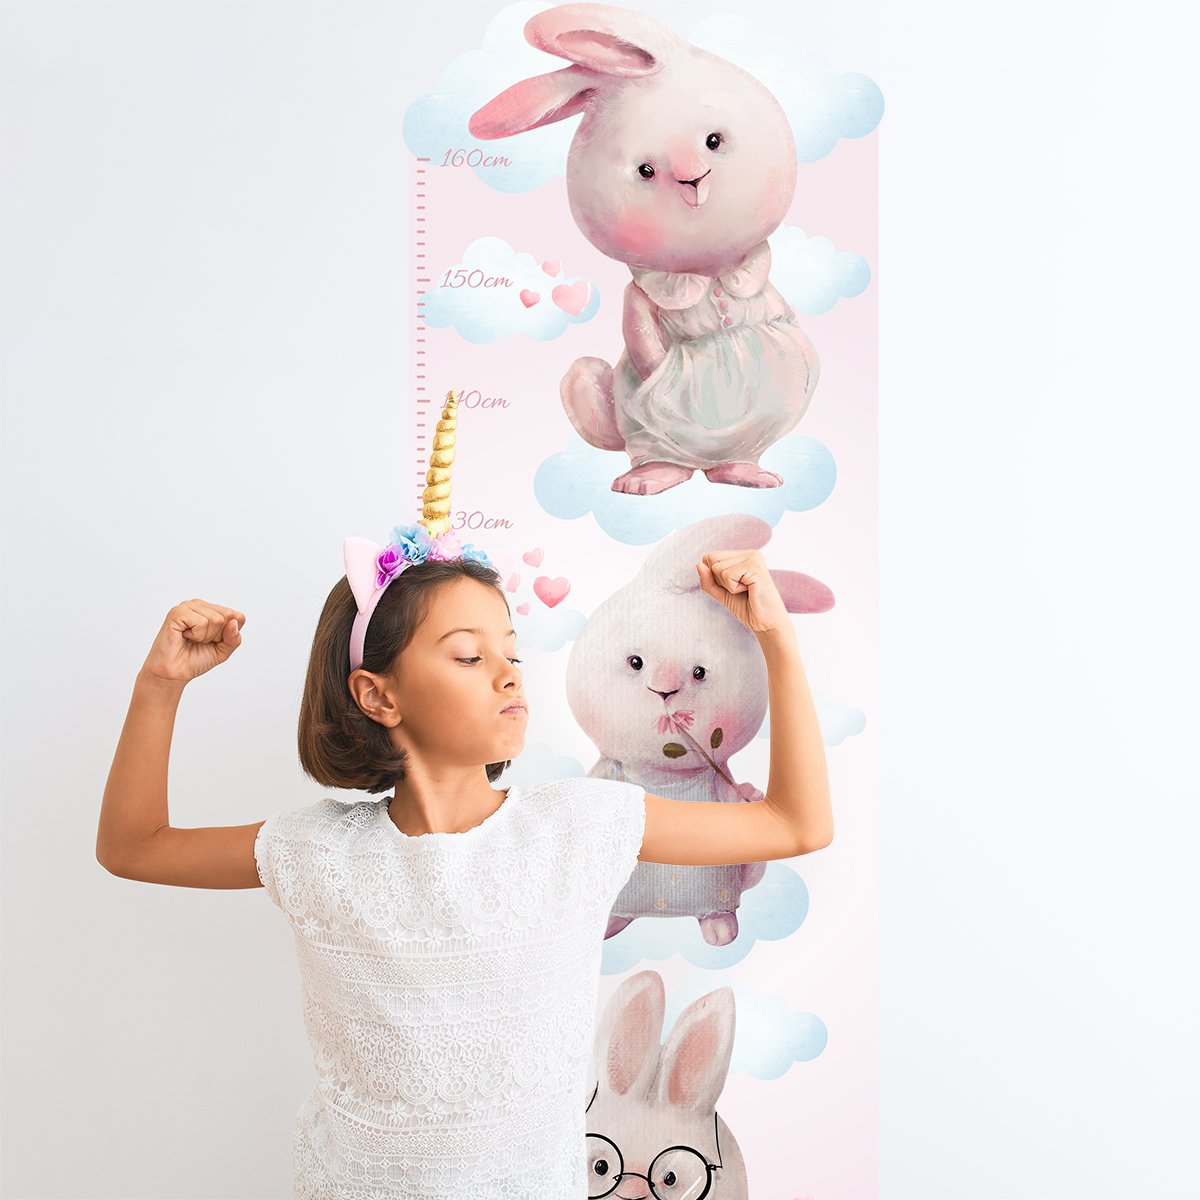 Naklejka na ścianę miarka wzrostu dla dzieci króliki i chmurki